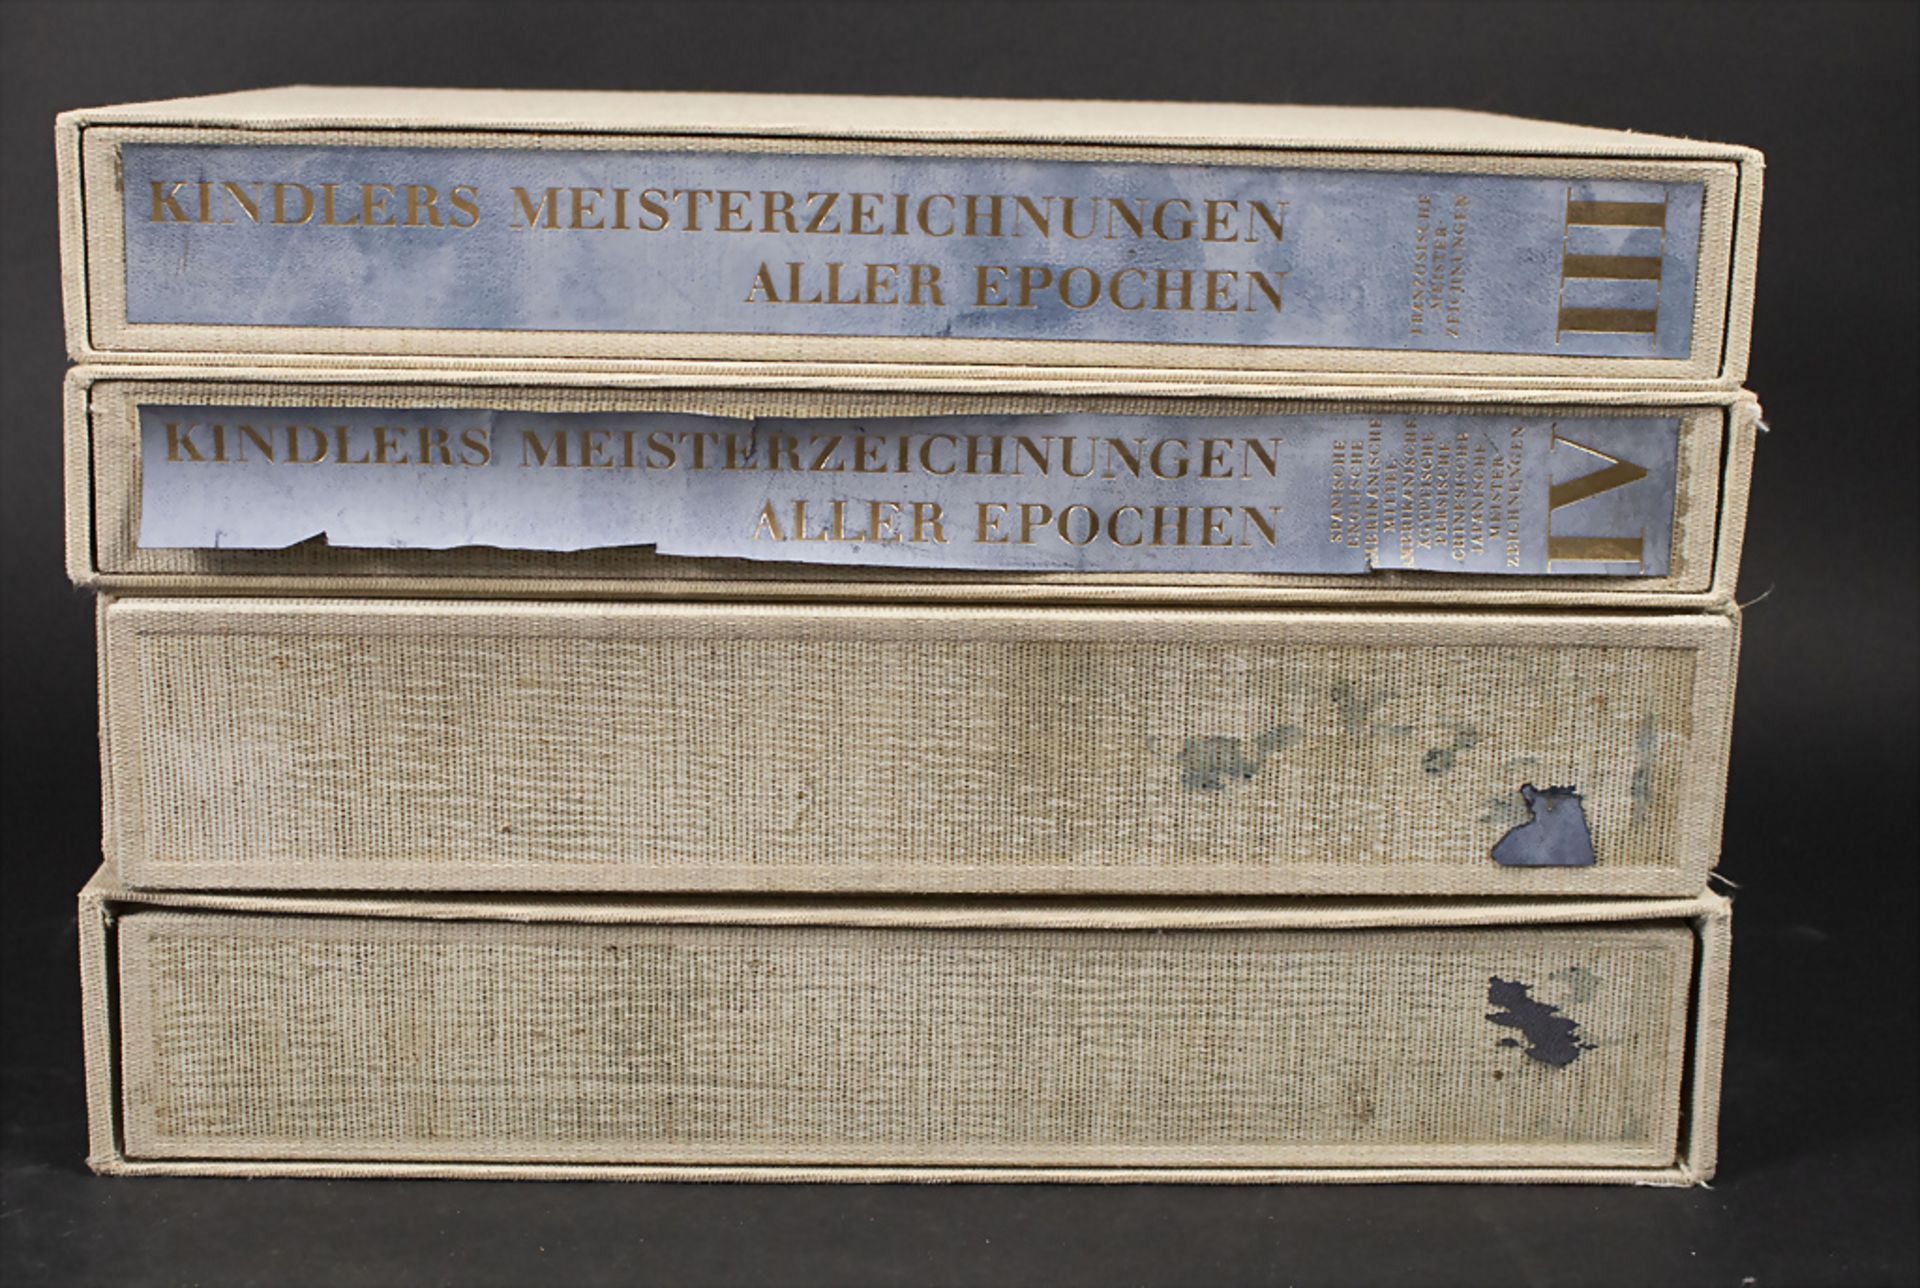 Ira Moskowitz (Hg.): 'Kindlers Meisterzeichnungen aller Epochen', 1962 - Image 2 of 6